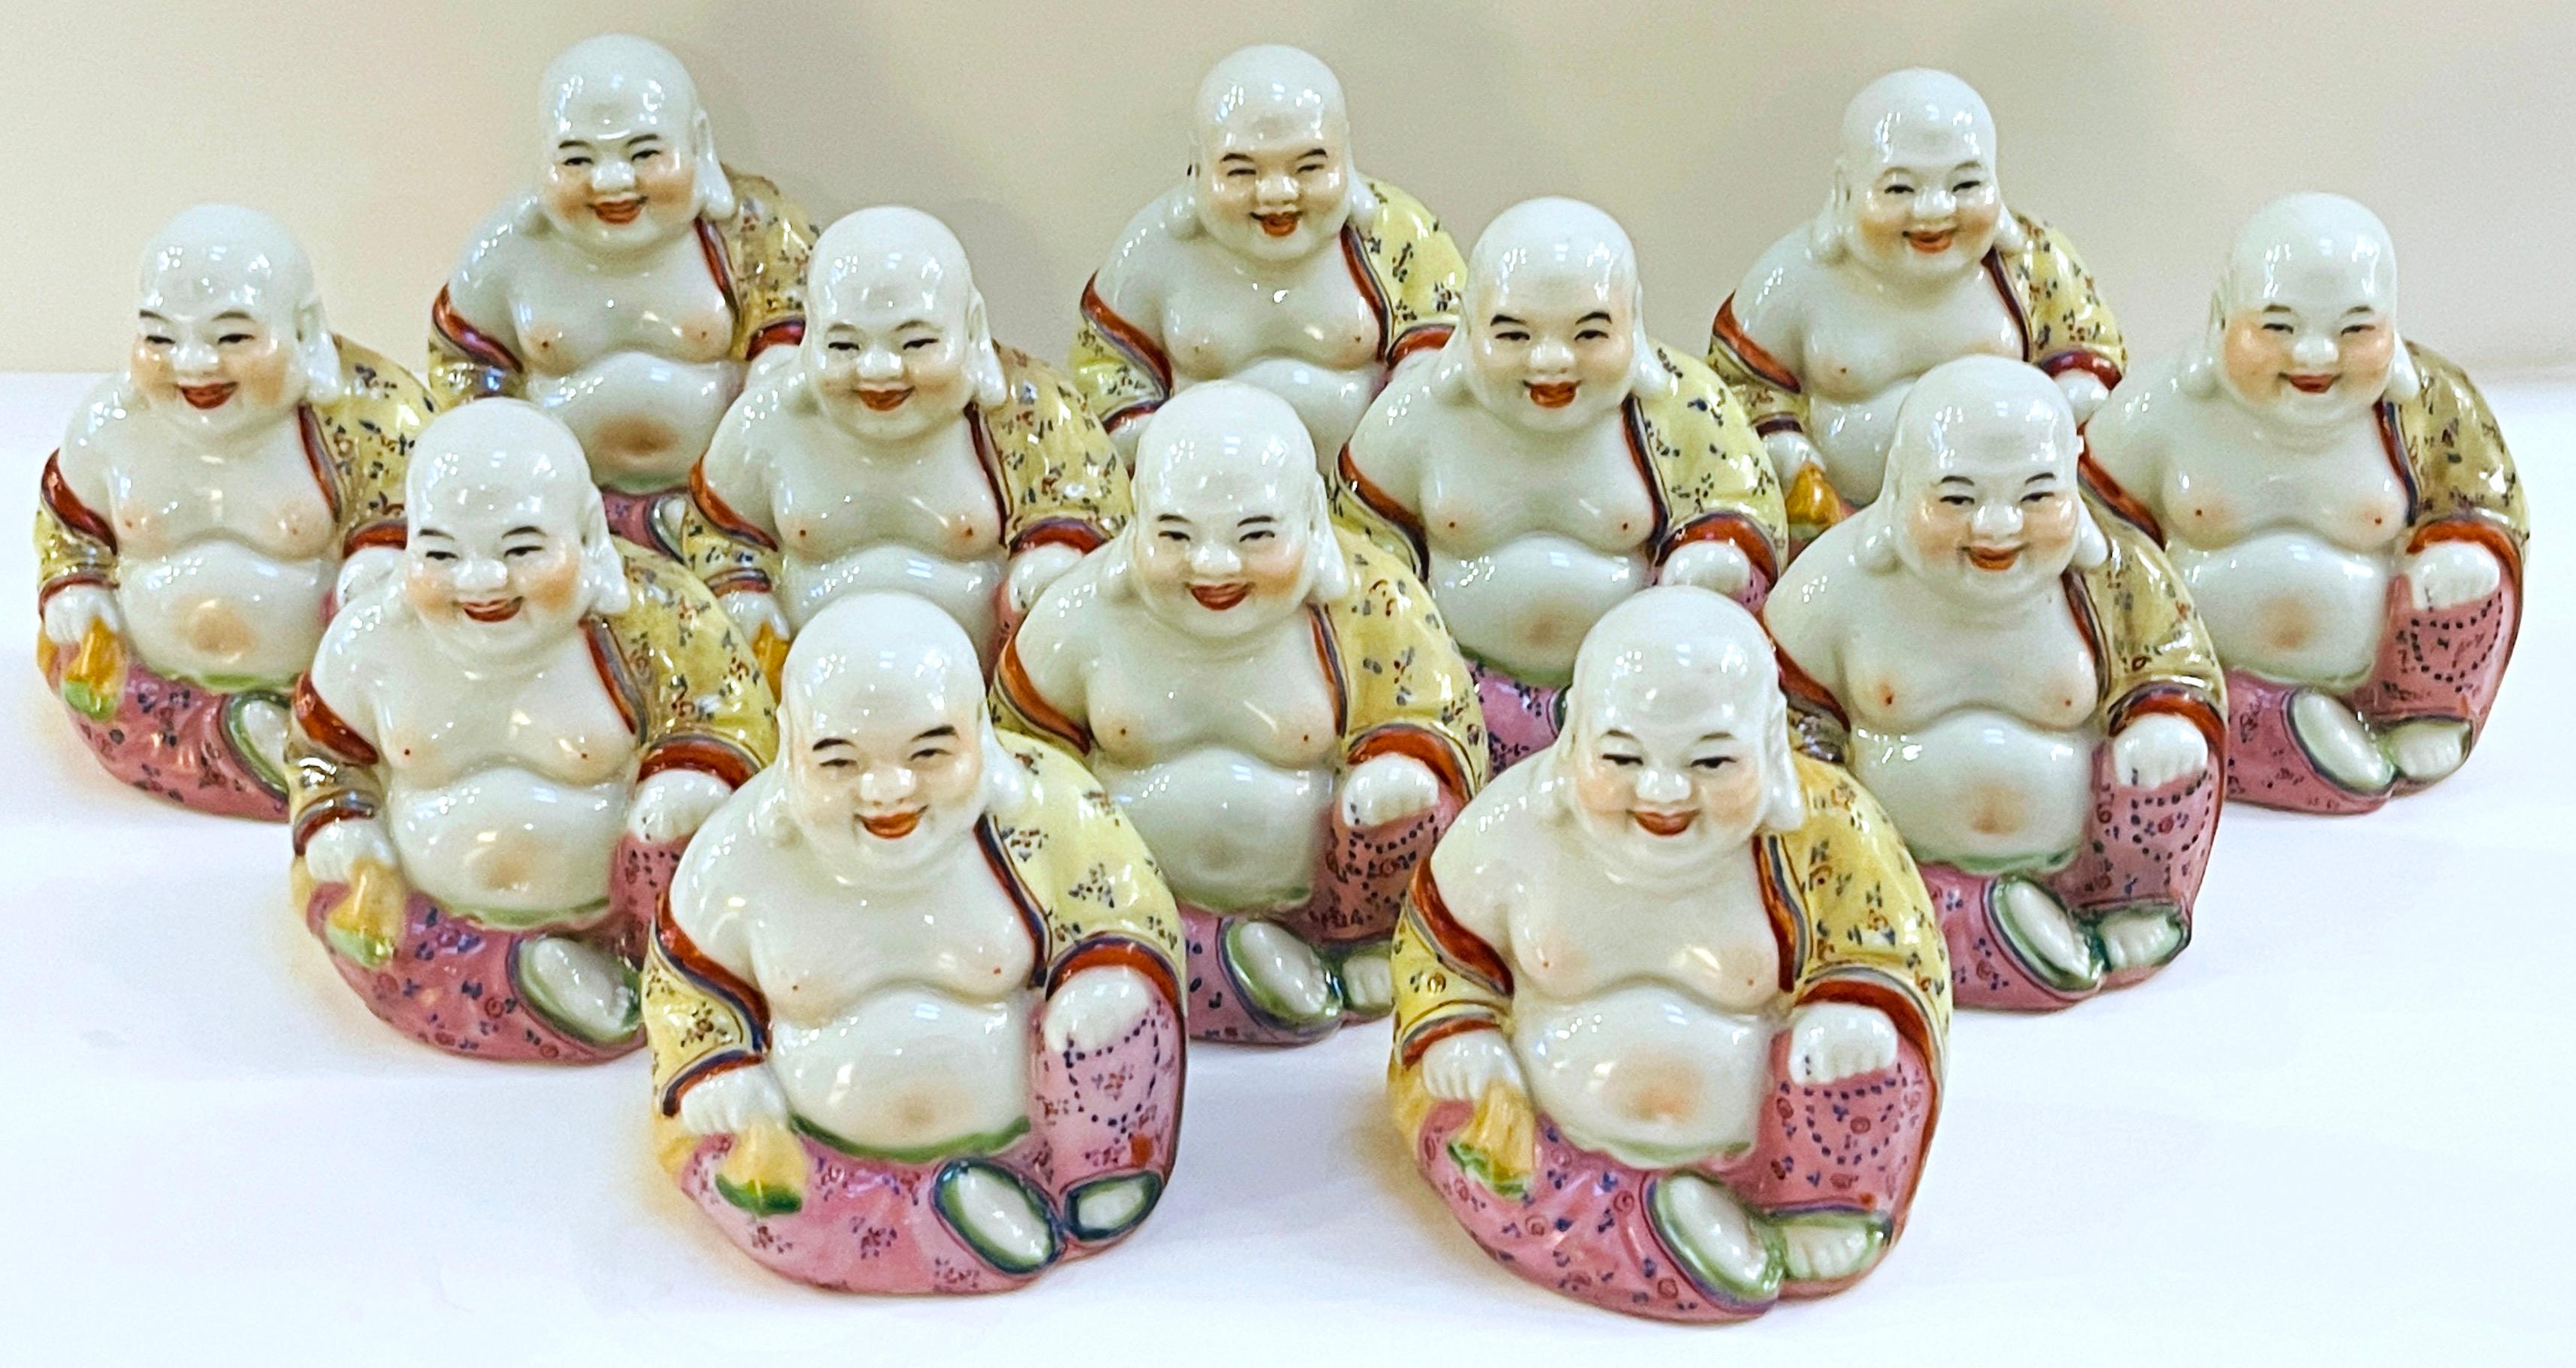 Collection de 12 Bouddhas diminutifs en porcelaine Famille-Verte d'exportation chinoise 
Chine, 20ème siècle 

Cette collection de douze petits bouddhas en porcelaine de famille verte d'exportation chinoise est une découverte remarquable, mettant en